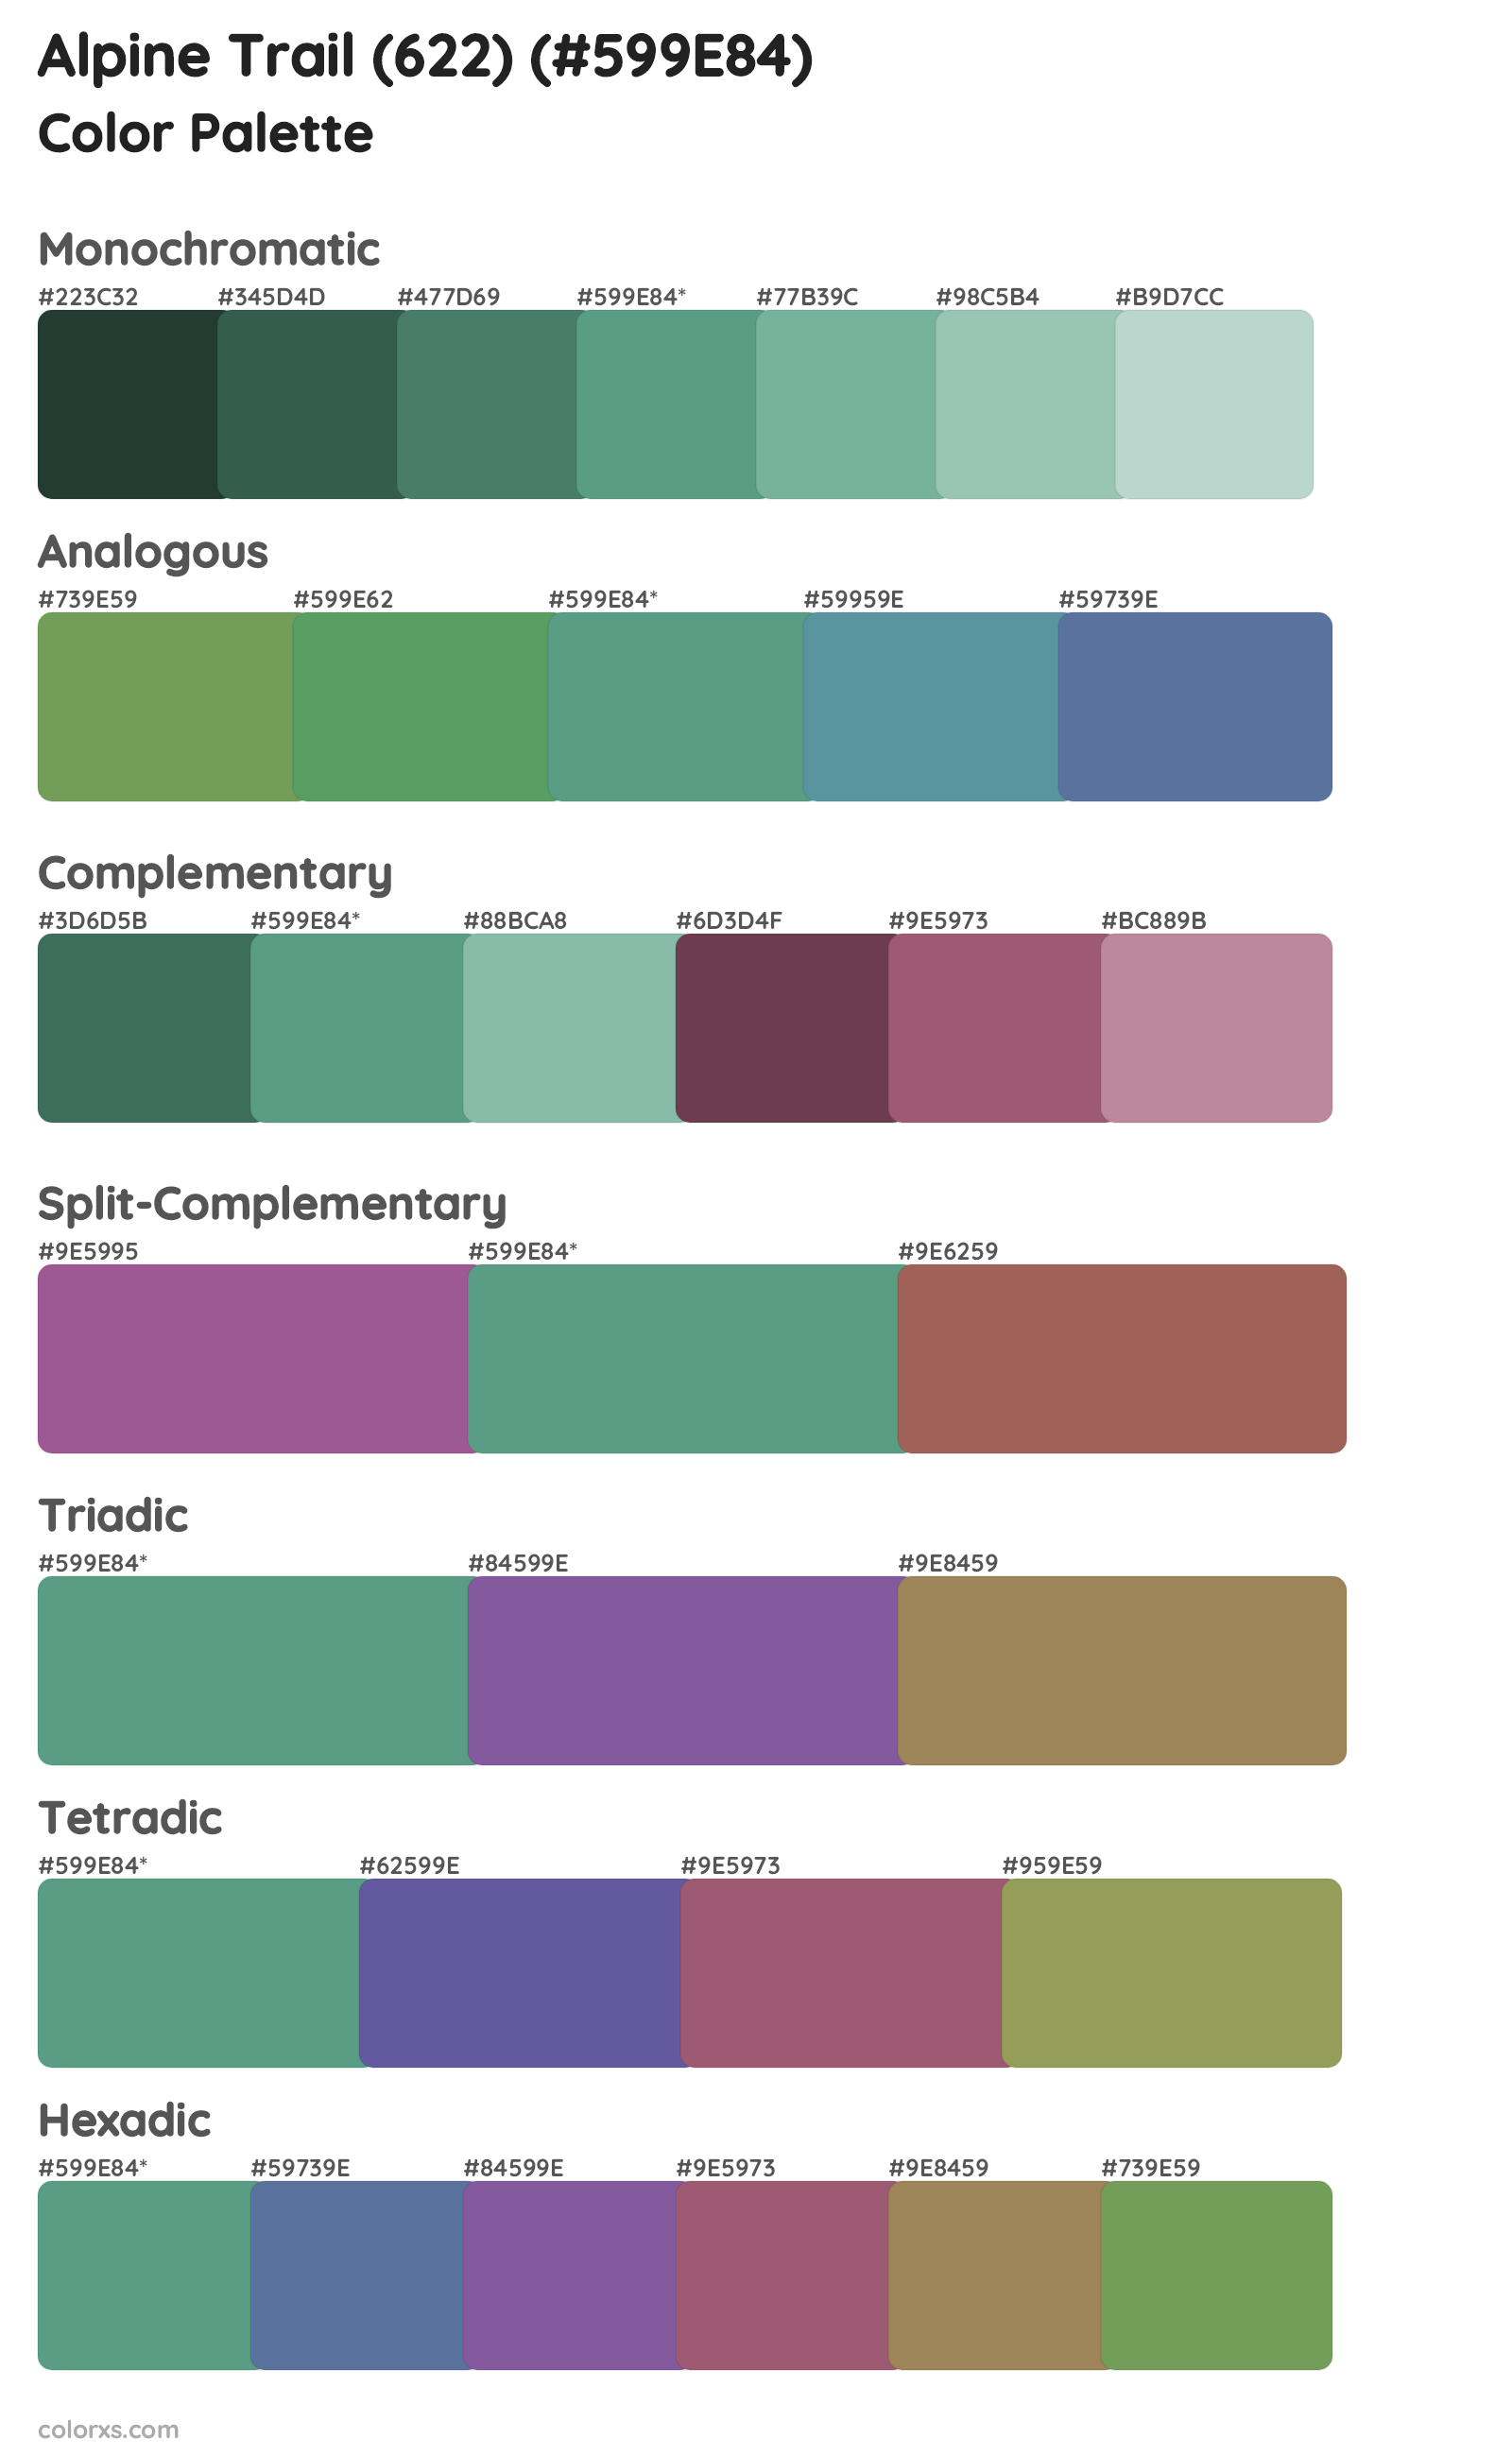 Alpine Trail (622) Color Scheme Palettes